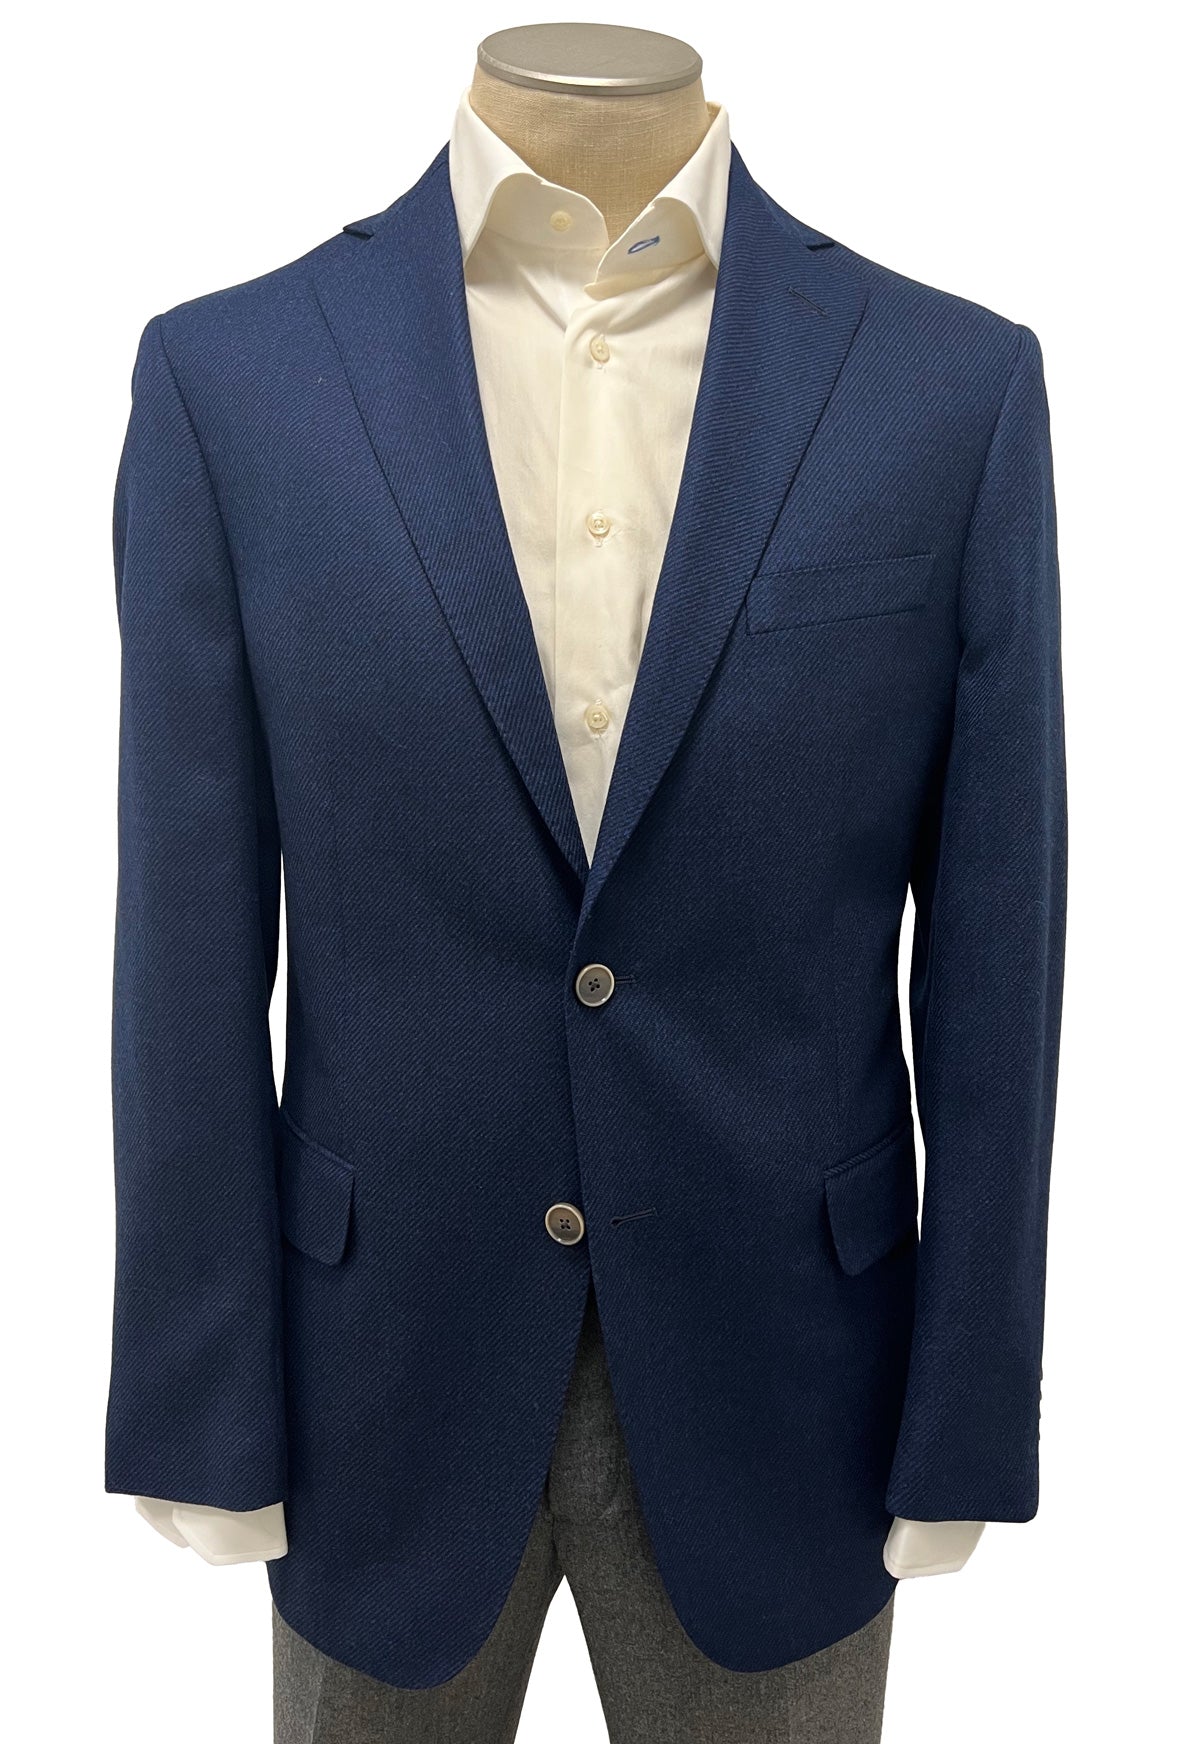 Men's Sport Coat Modern Cut - BLUE 70/30 WOOL/AIRWOOL